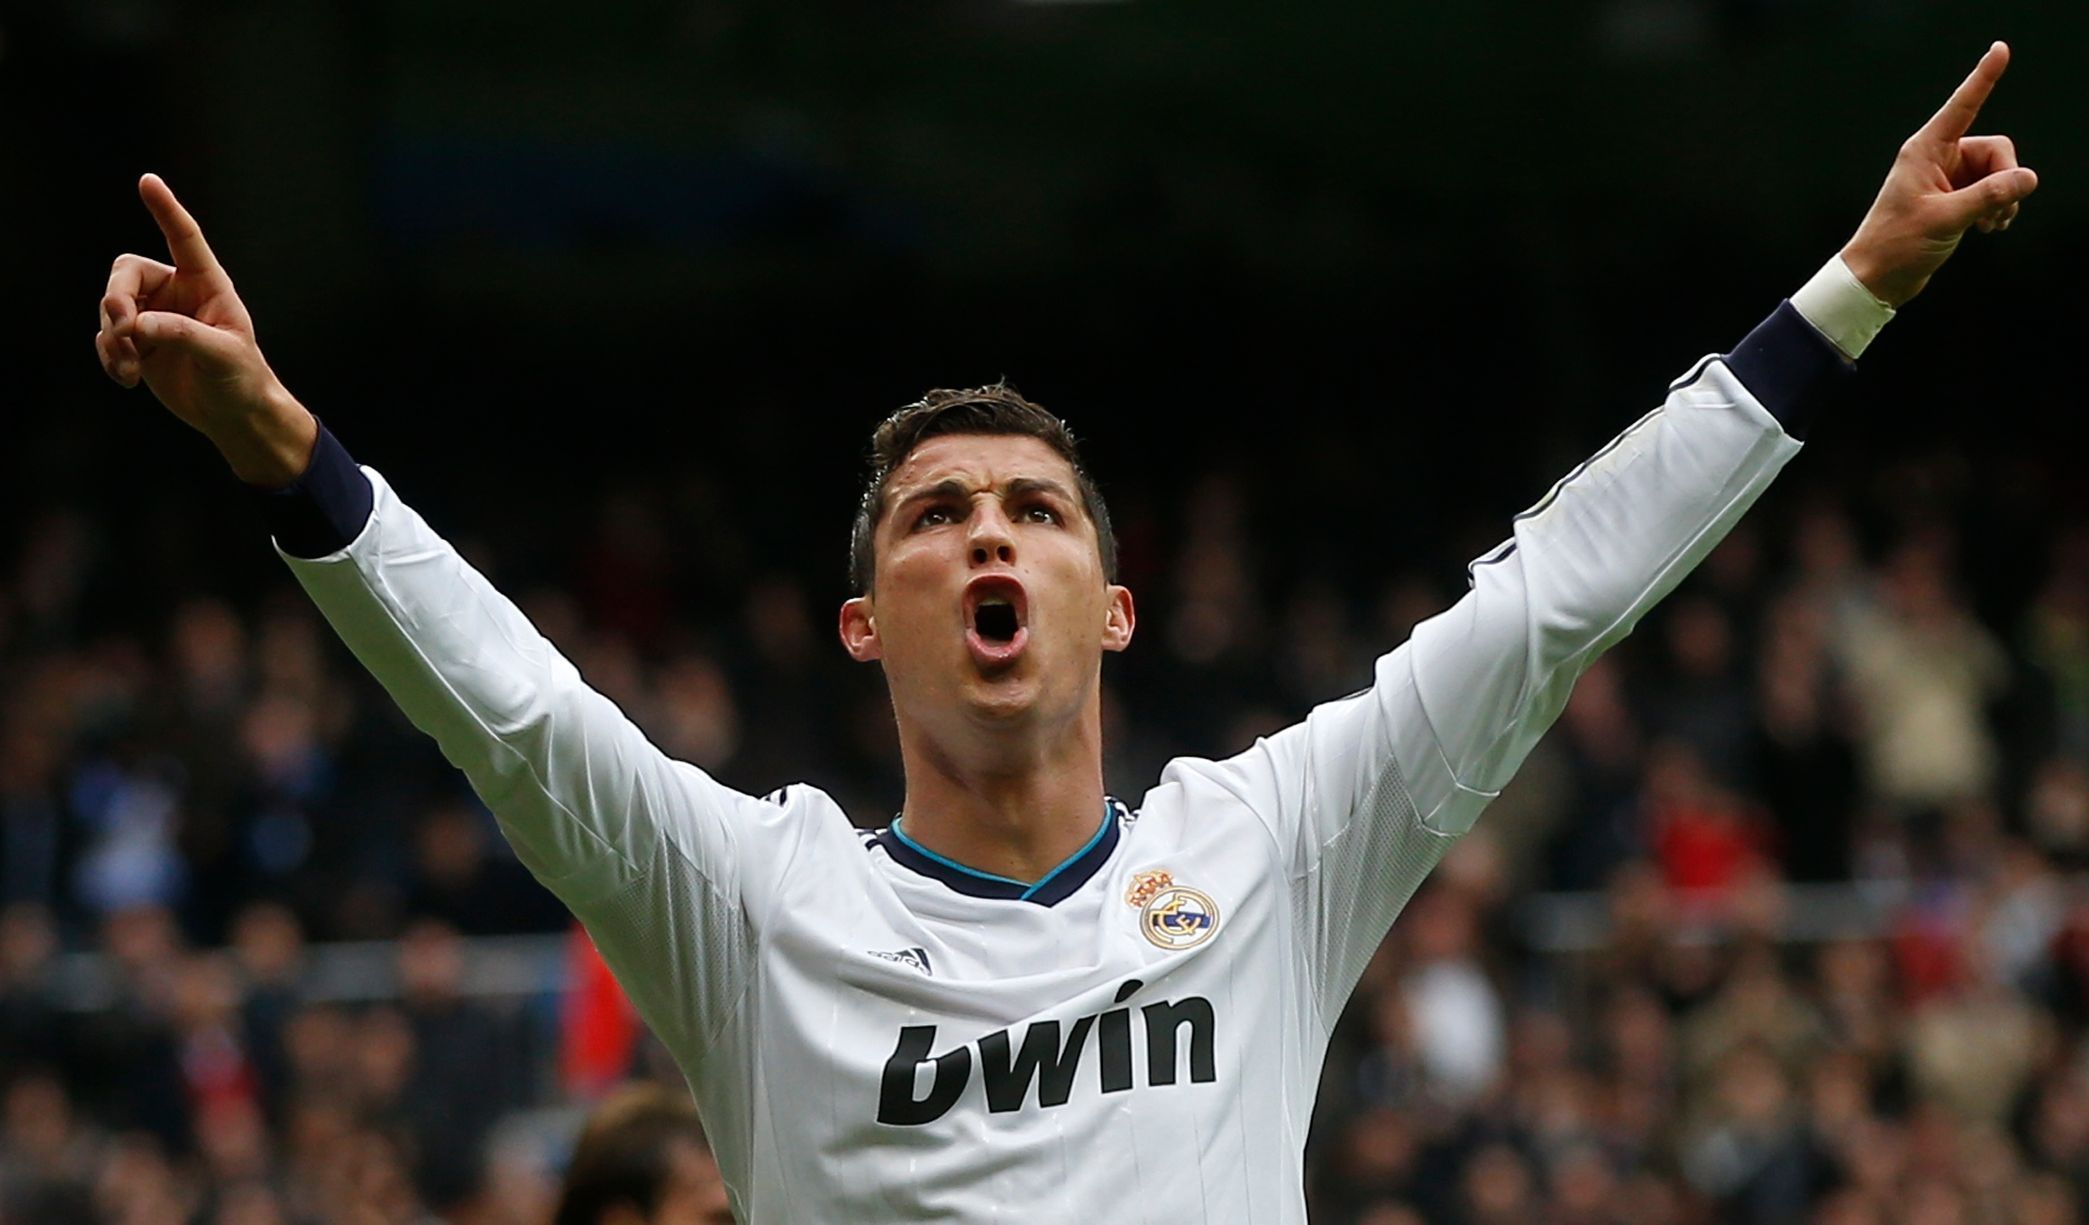 Cristiano Ronaldo slaví branku do sítě Getafe